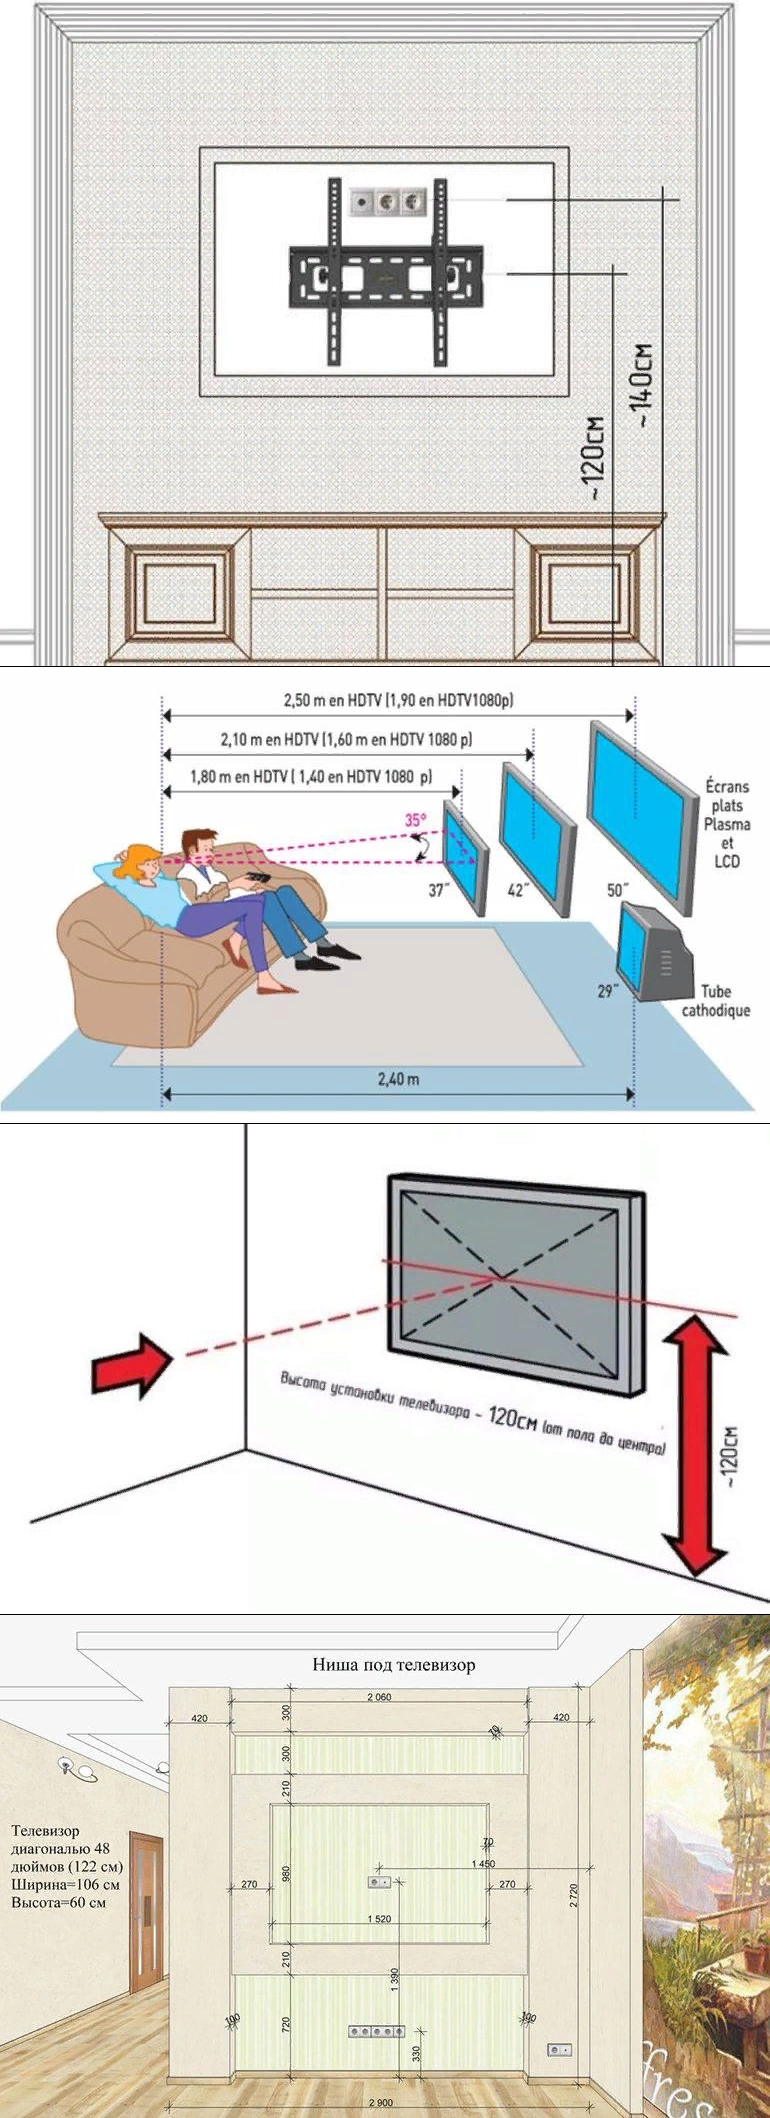 Телевизор в спальне: лучшие идеи как правильно вписать в интерьер телевизор или монитор (120 фото)